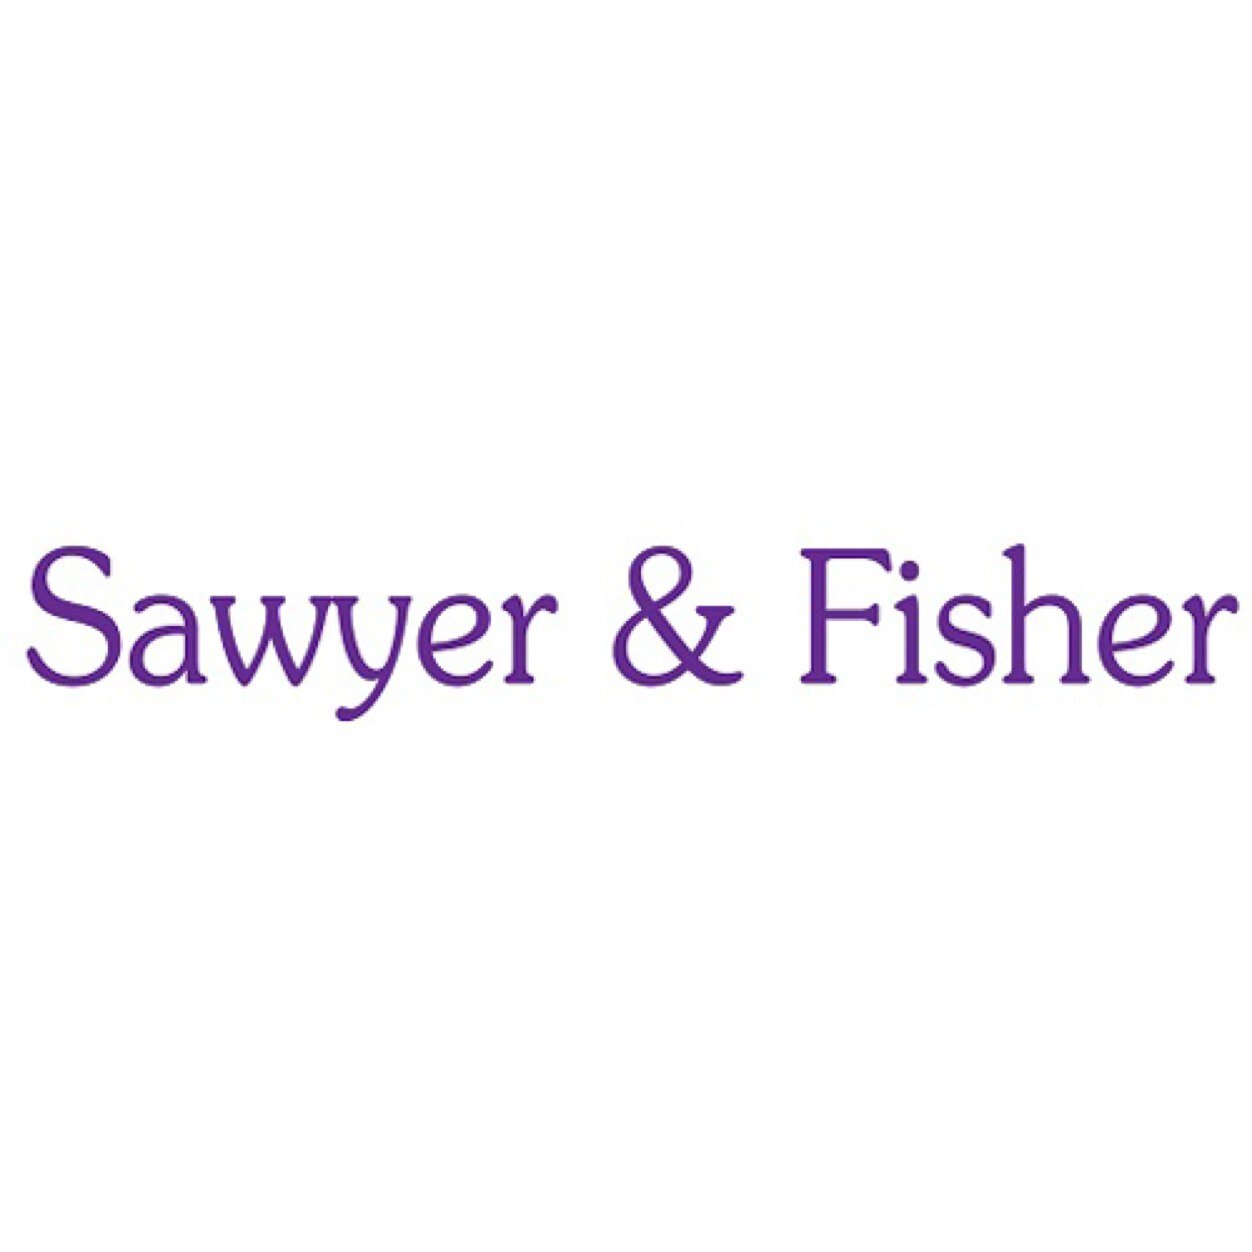 Sawyer & Fisher